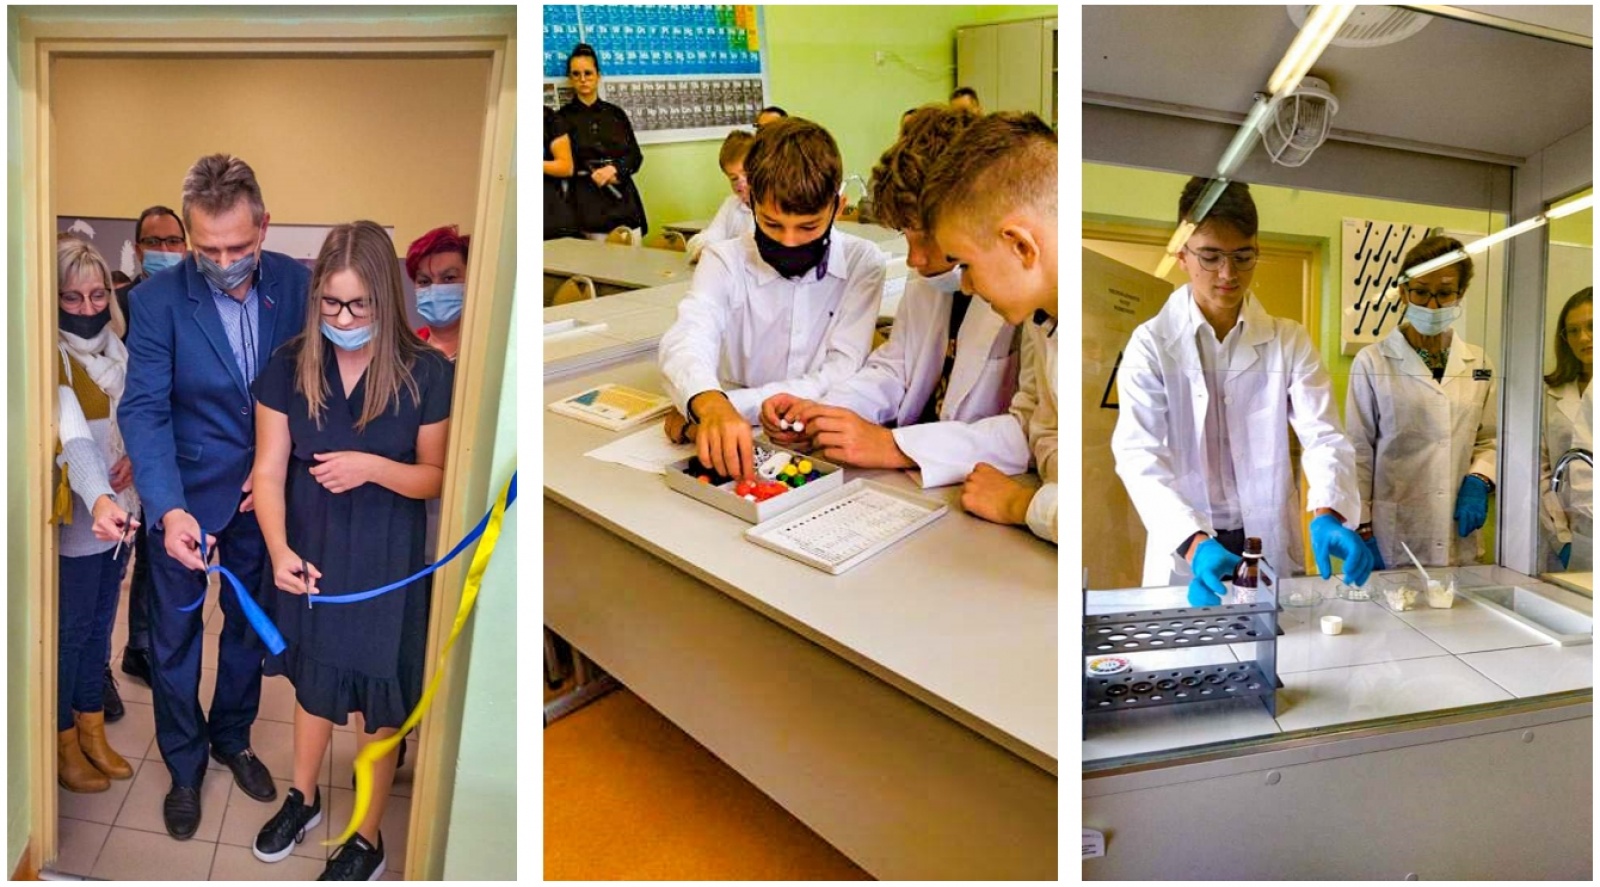 Știința este distractivă!  Școala din Kuźnia Raciborska are studiouri moderne